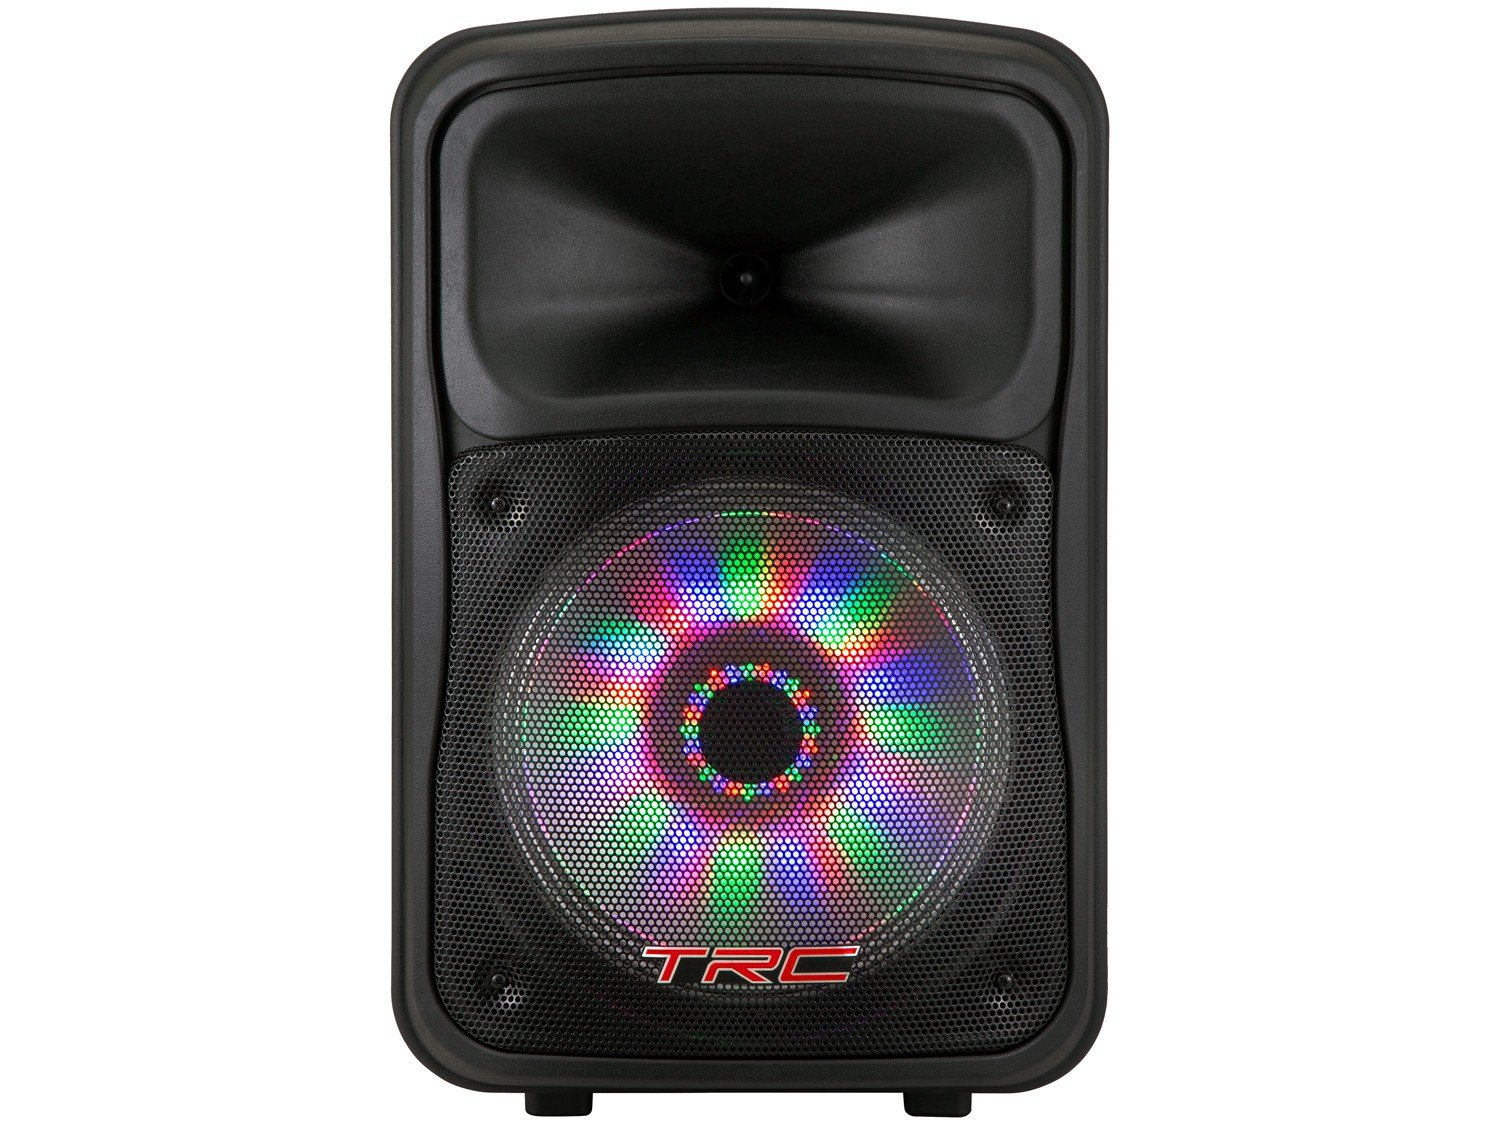 Caixa de Som Amplificada TRC 536 com Bluetooth, Rádio FM, Entrada USB e Iluminação Frontal em Led - 480W - 4